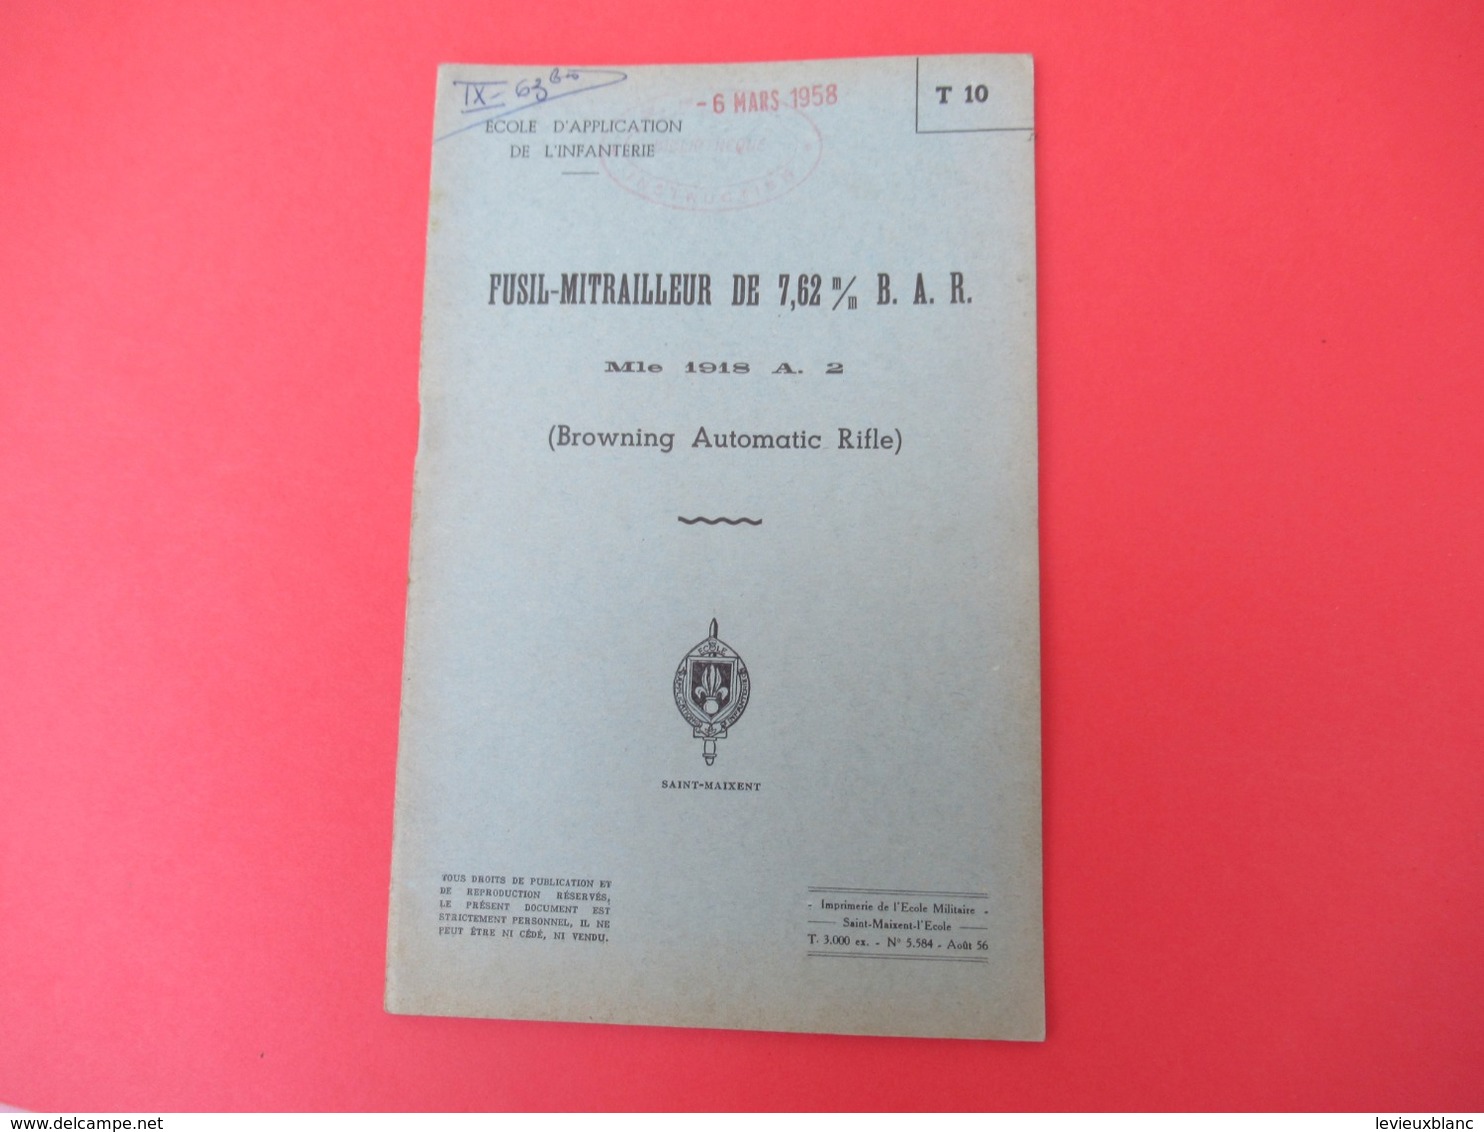 Livret/Ecole D'application De L'Infanterie/Fusil-Mitrailleur De 7,62 Mm BAR Mle 1918/ 1956   VPN206 - French